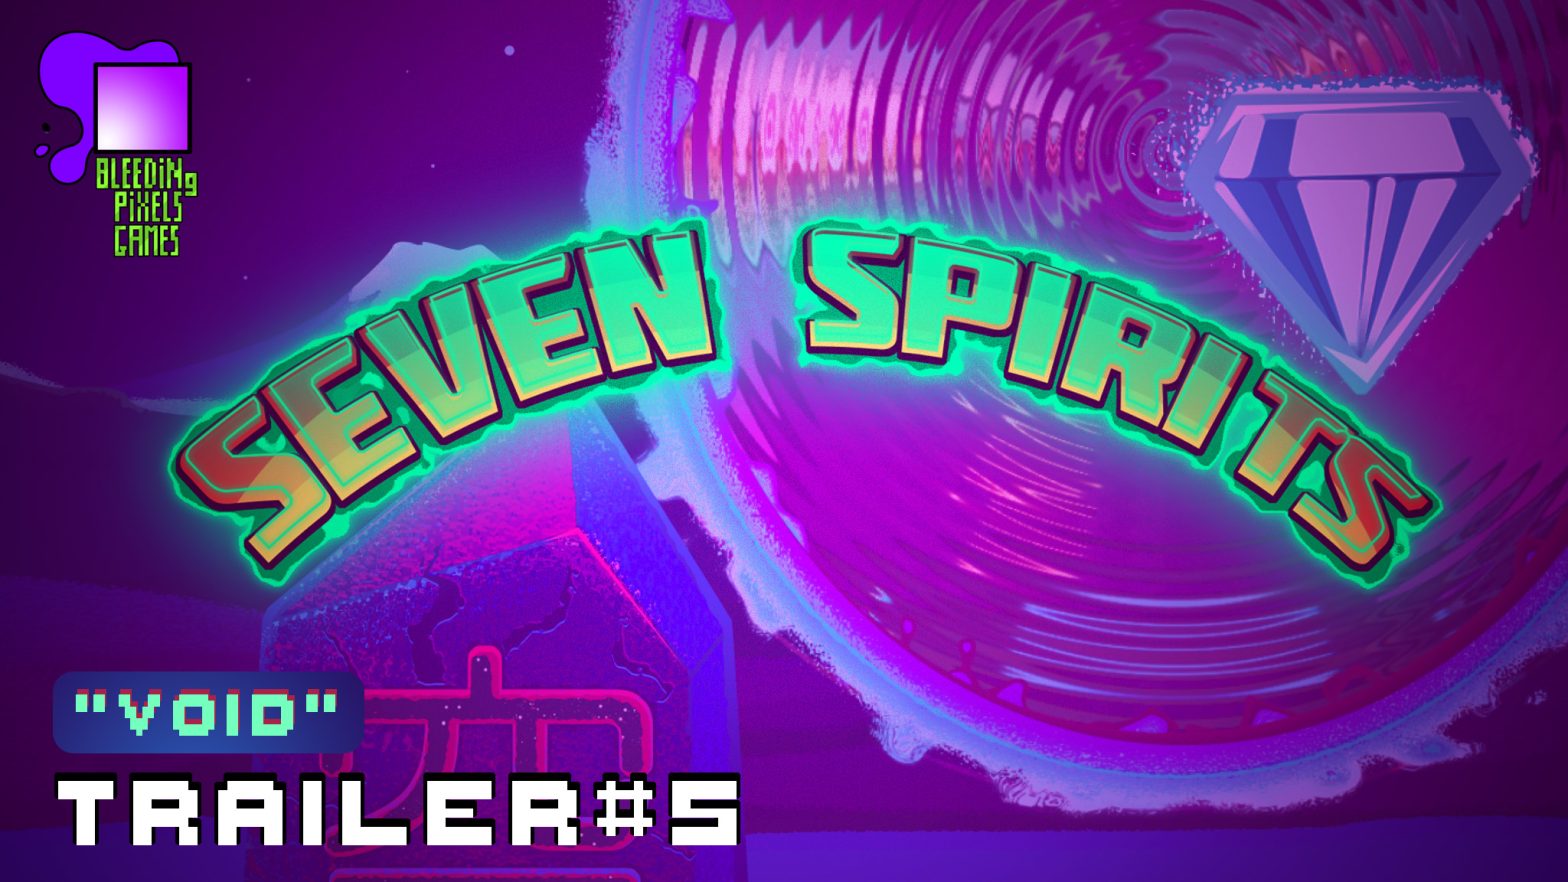 Seven Spirits – Trailer #5 “Void”